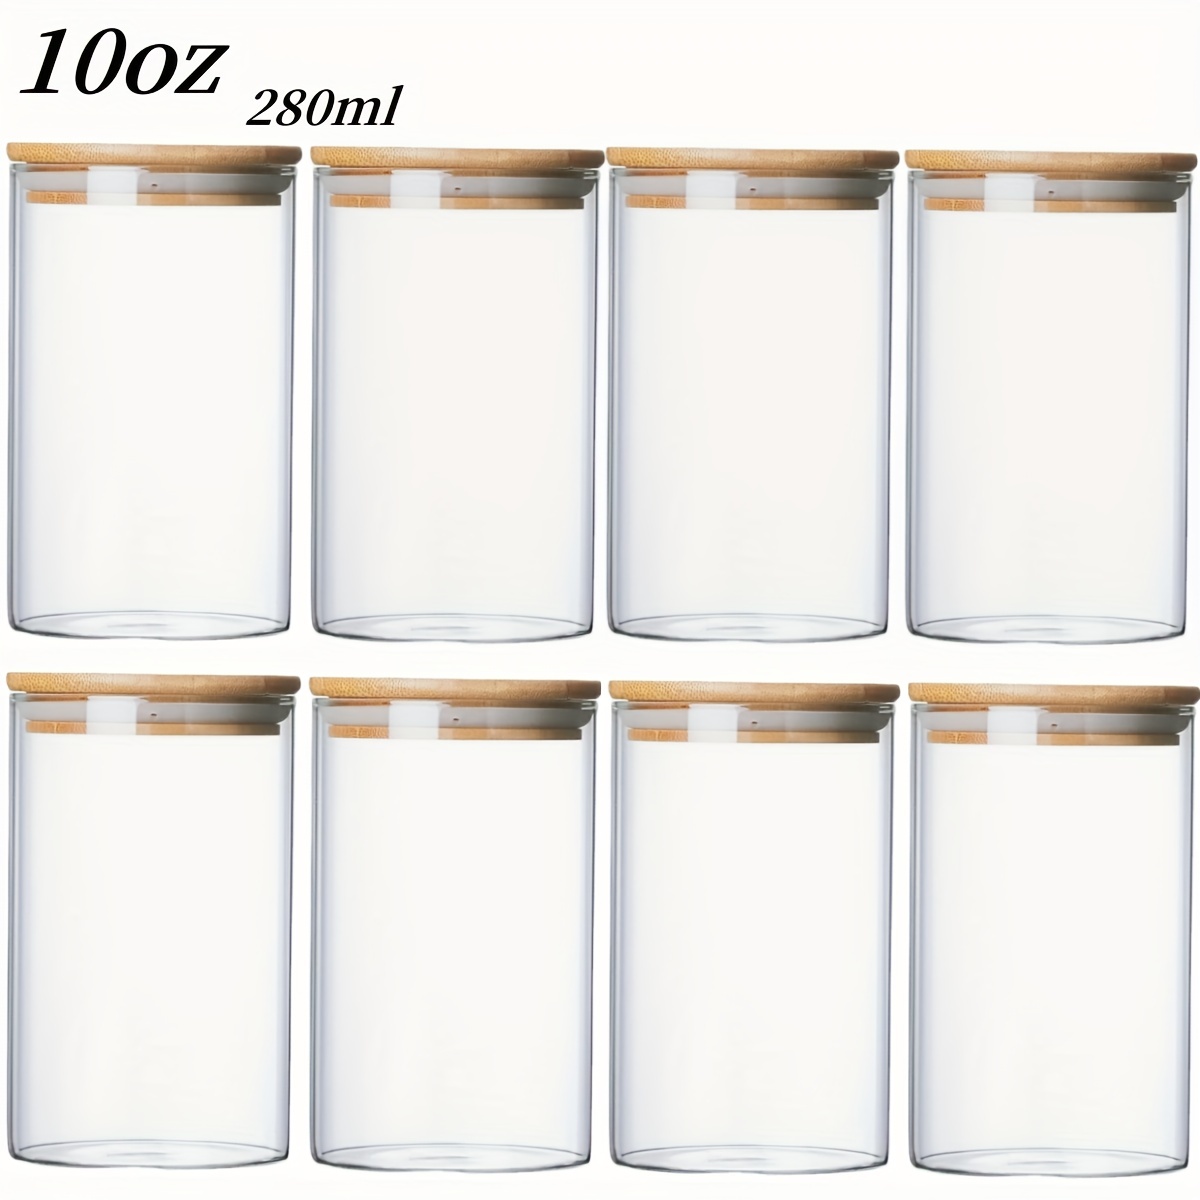  Large Glass Storage Jar, 60 FL OZ Glass Food Storage